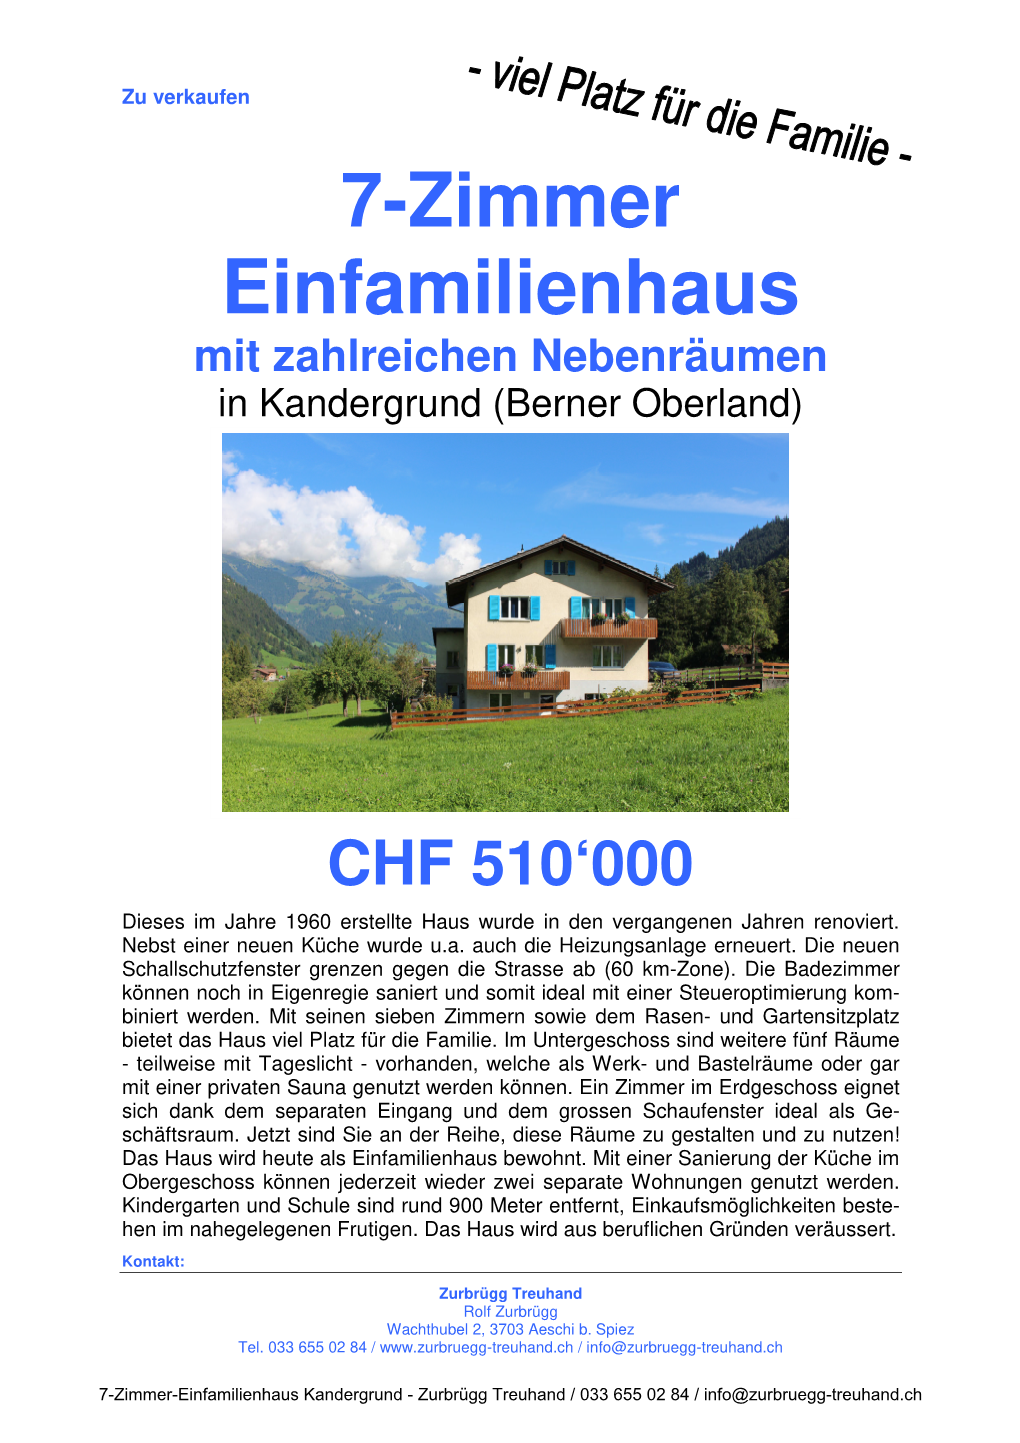 7-Zimmer Einfamilienhaus Mit Zahlreichen Nebenräumen in Kandergrund (Berner Oberland)